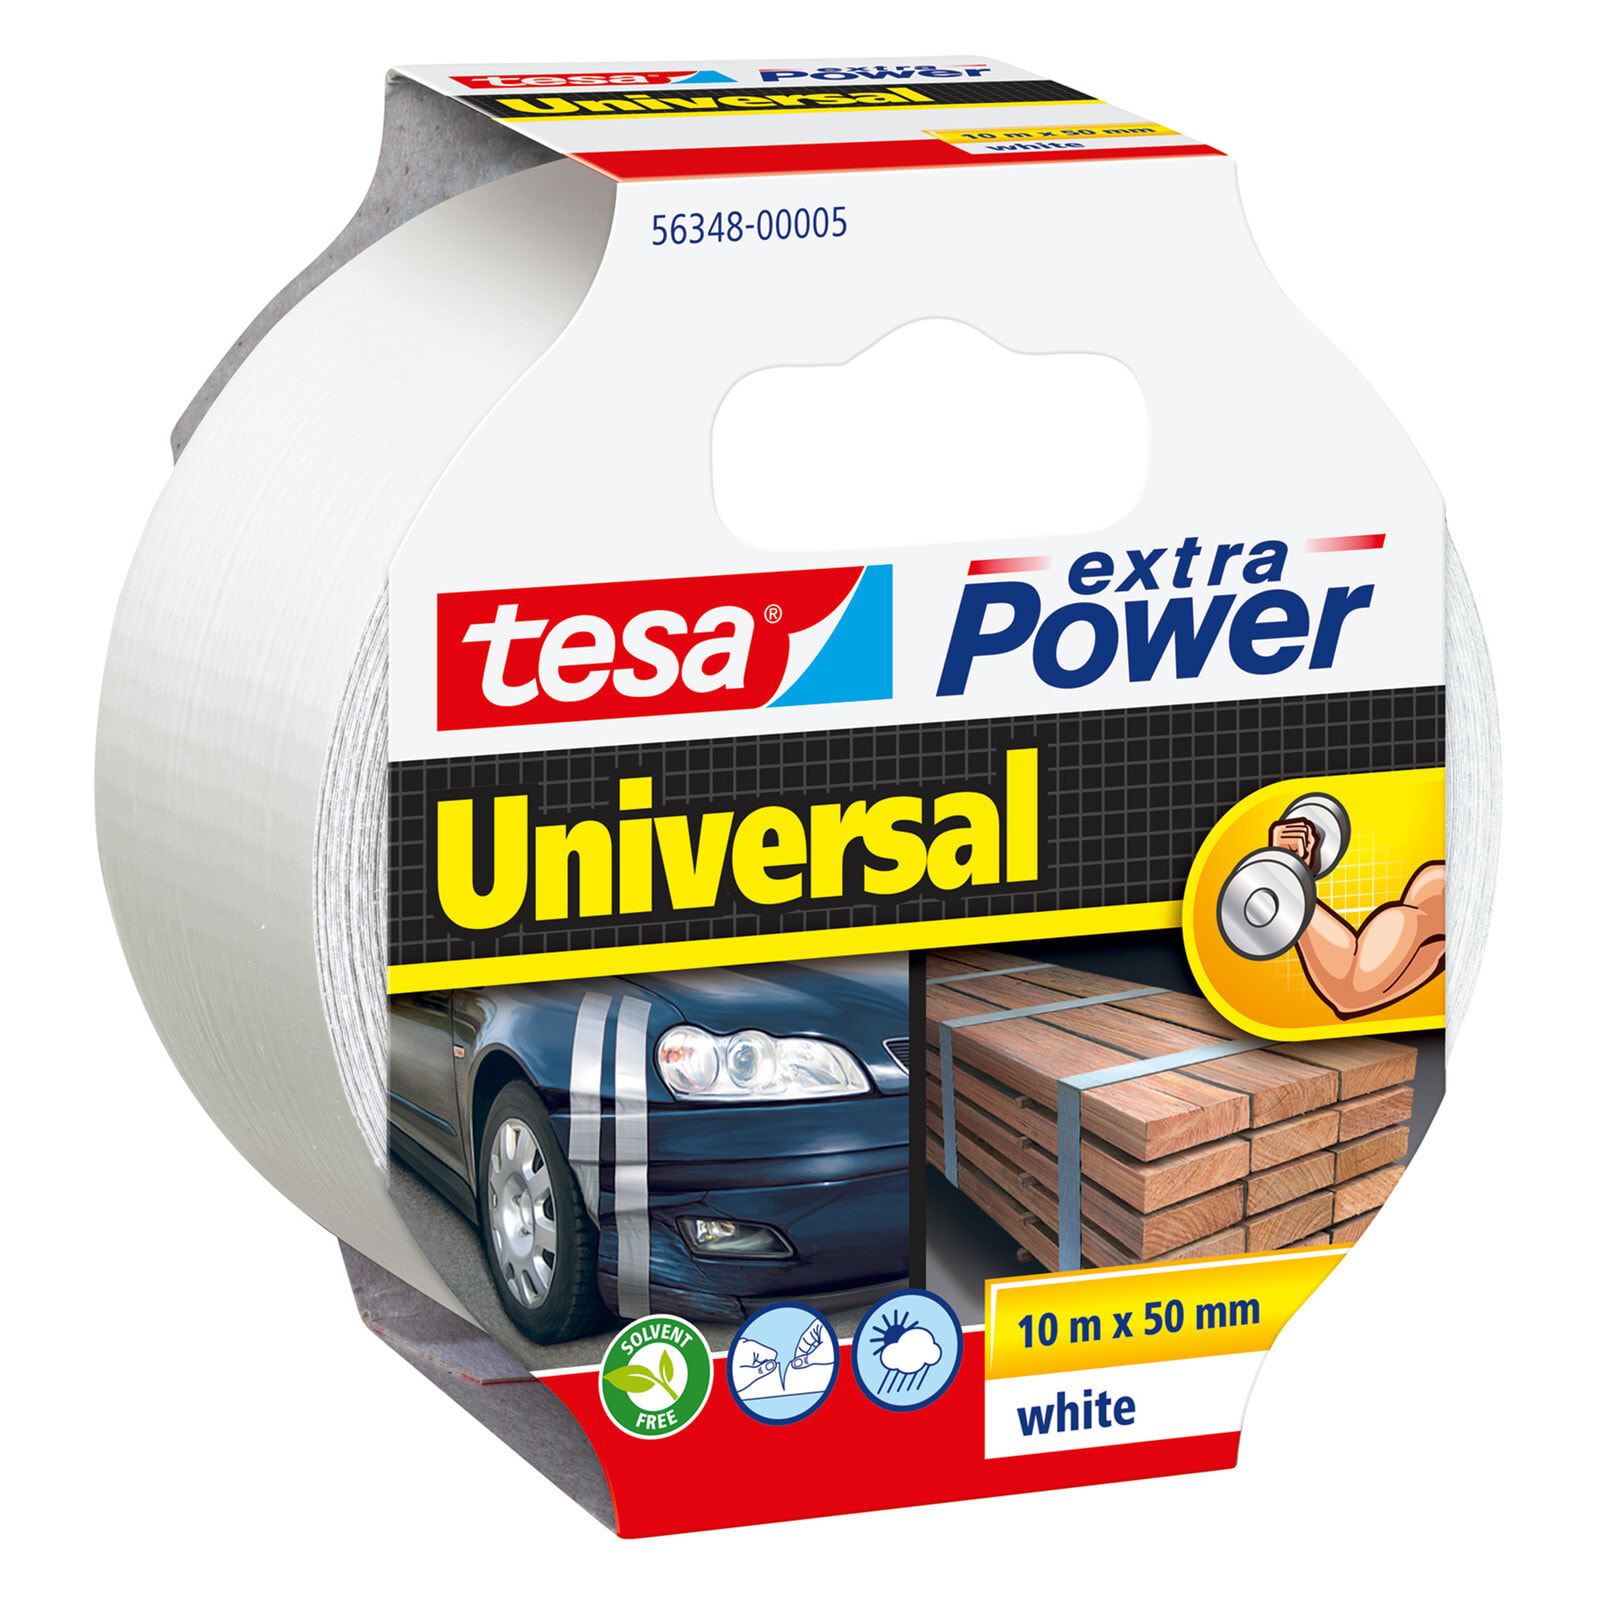 TESA extra Power Universal Белый 10 m 56348-00005-05